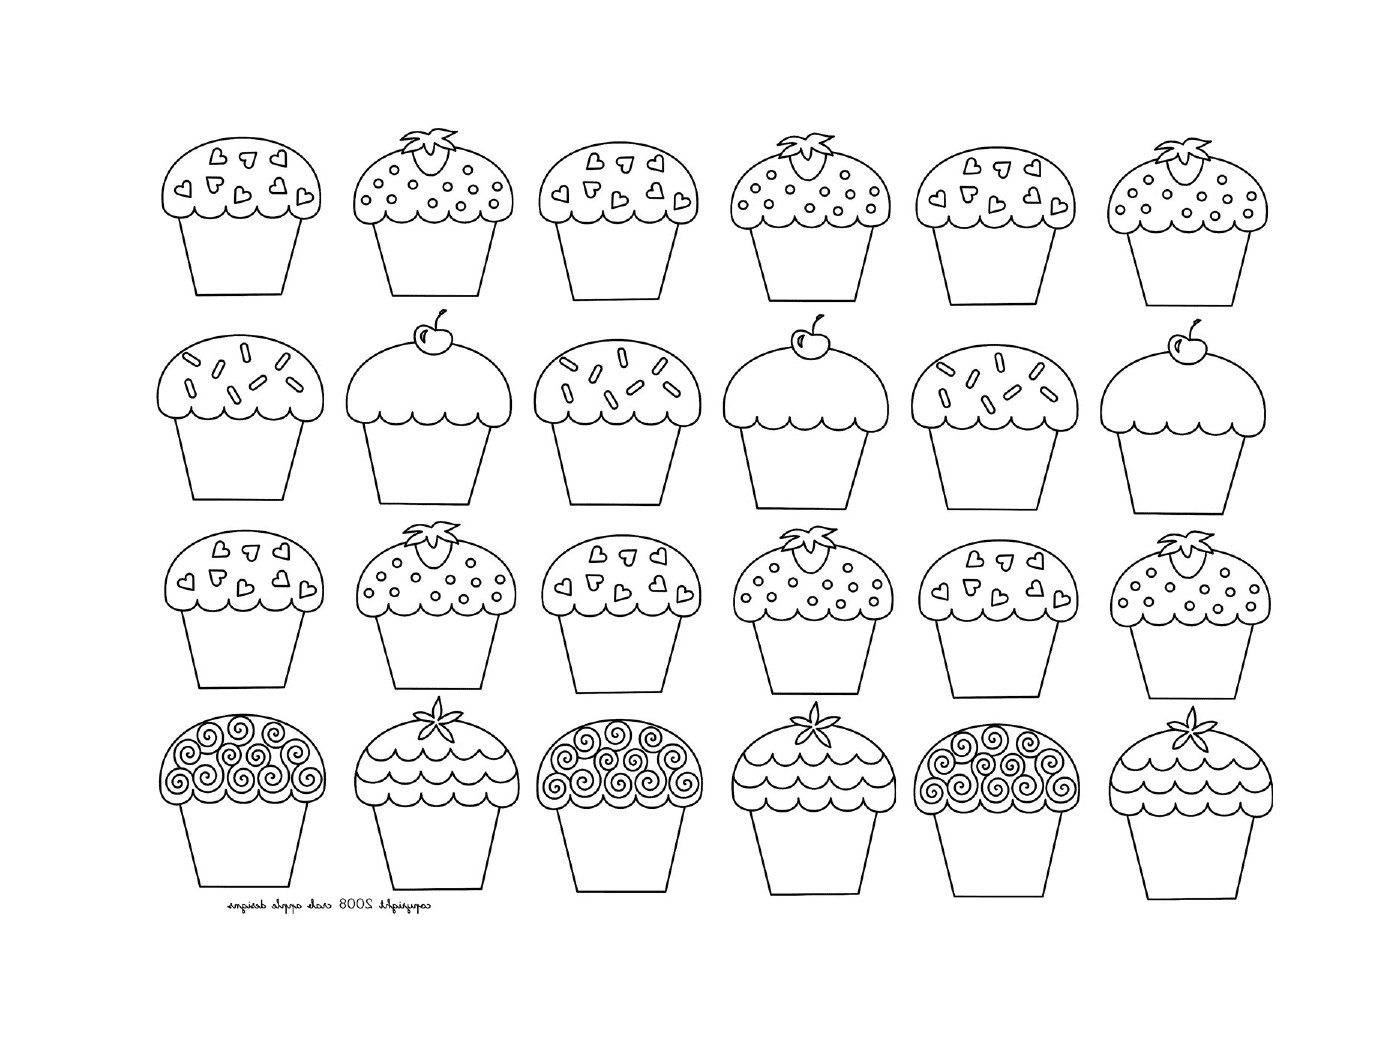  Un mosaico di cupcake per bambini, di diversi tipi 